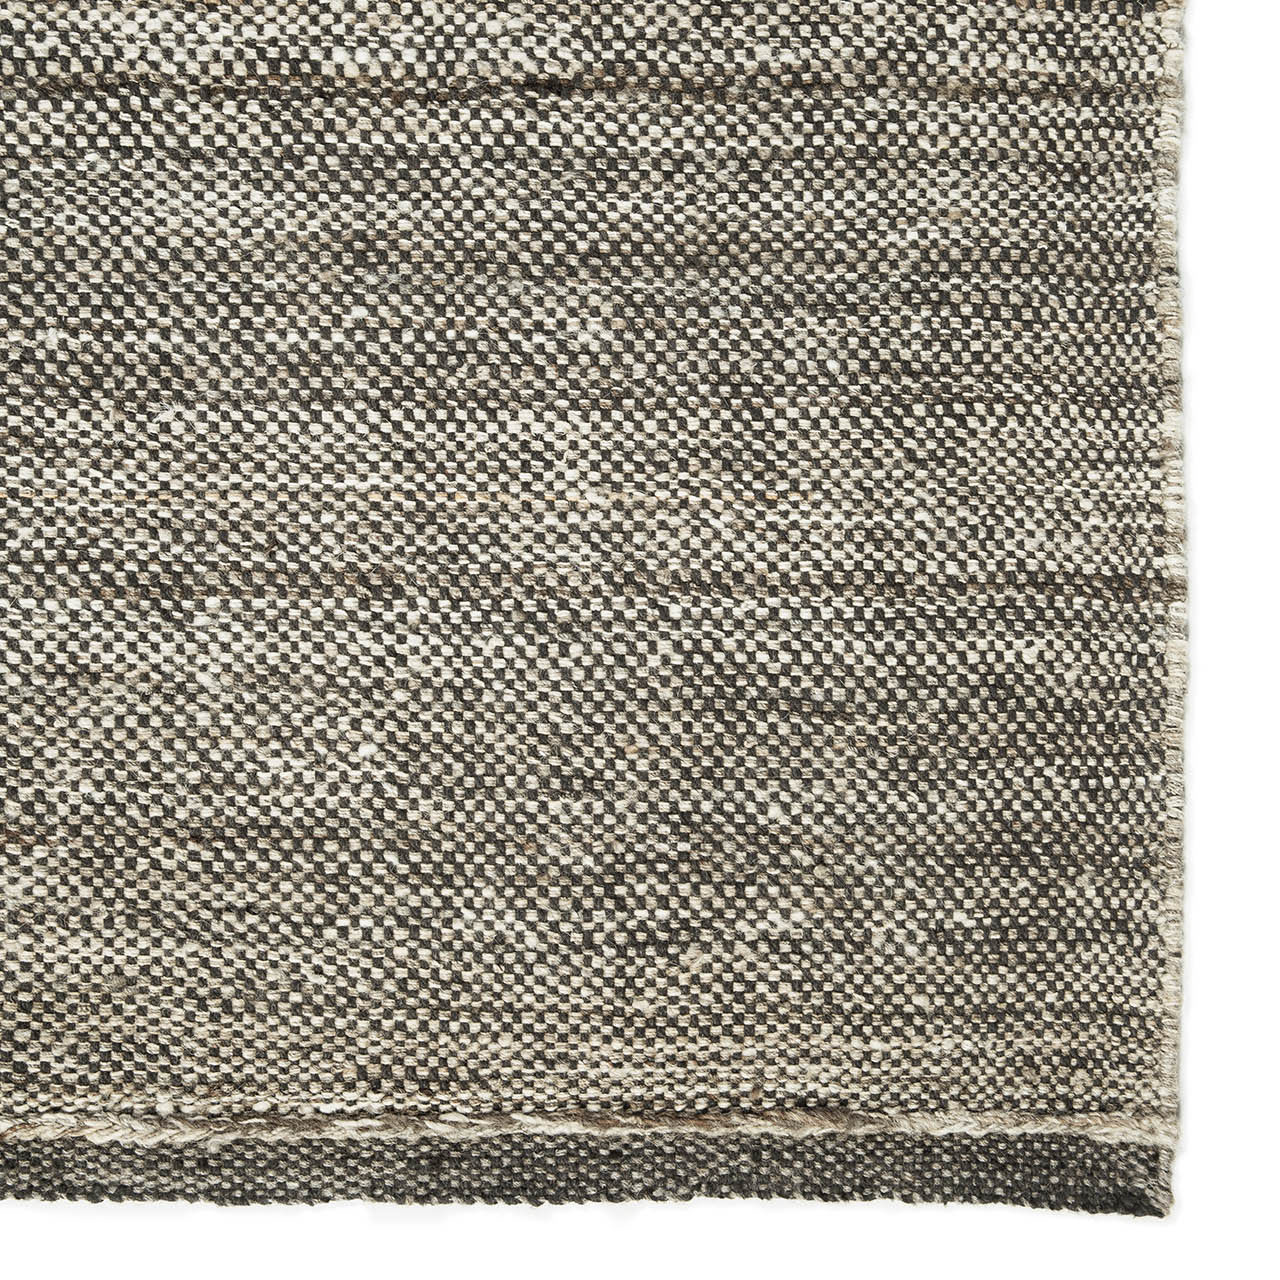 Checked Kilim-Teppich Natur 100 % handgesponnene Wolle 21728